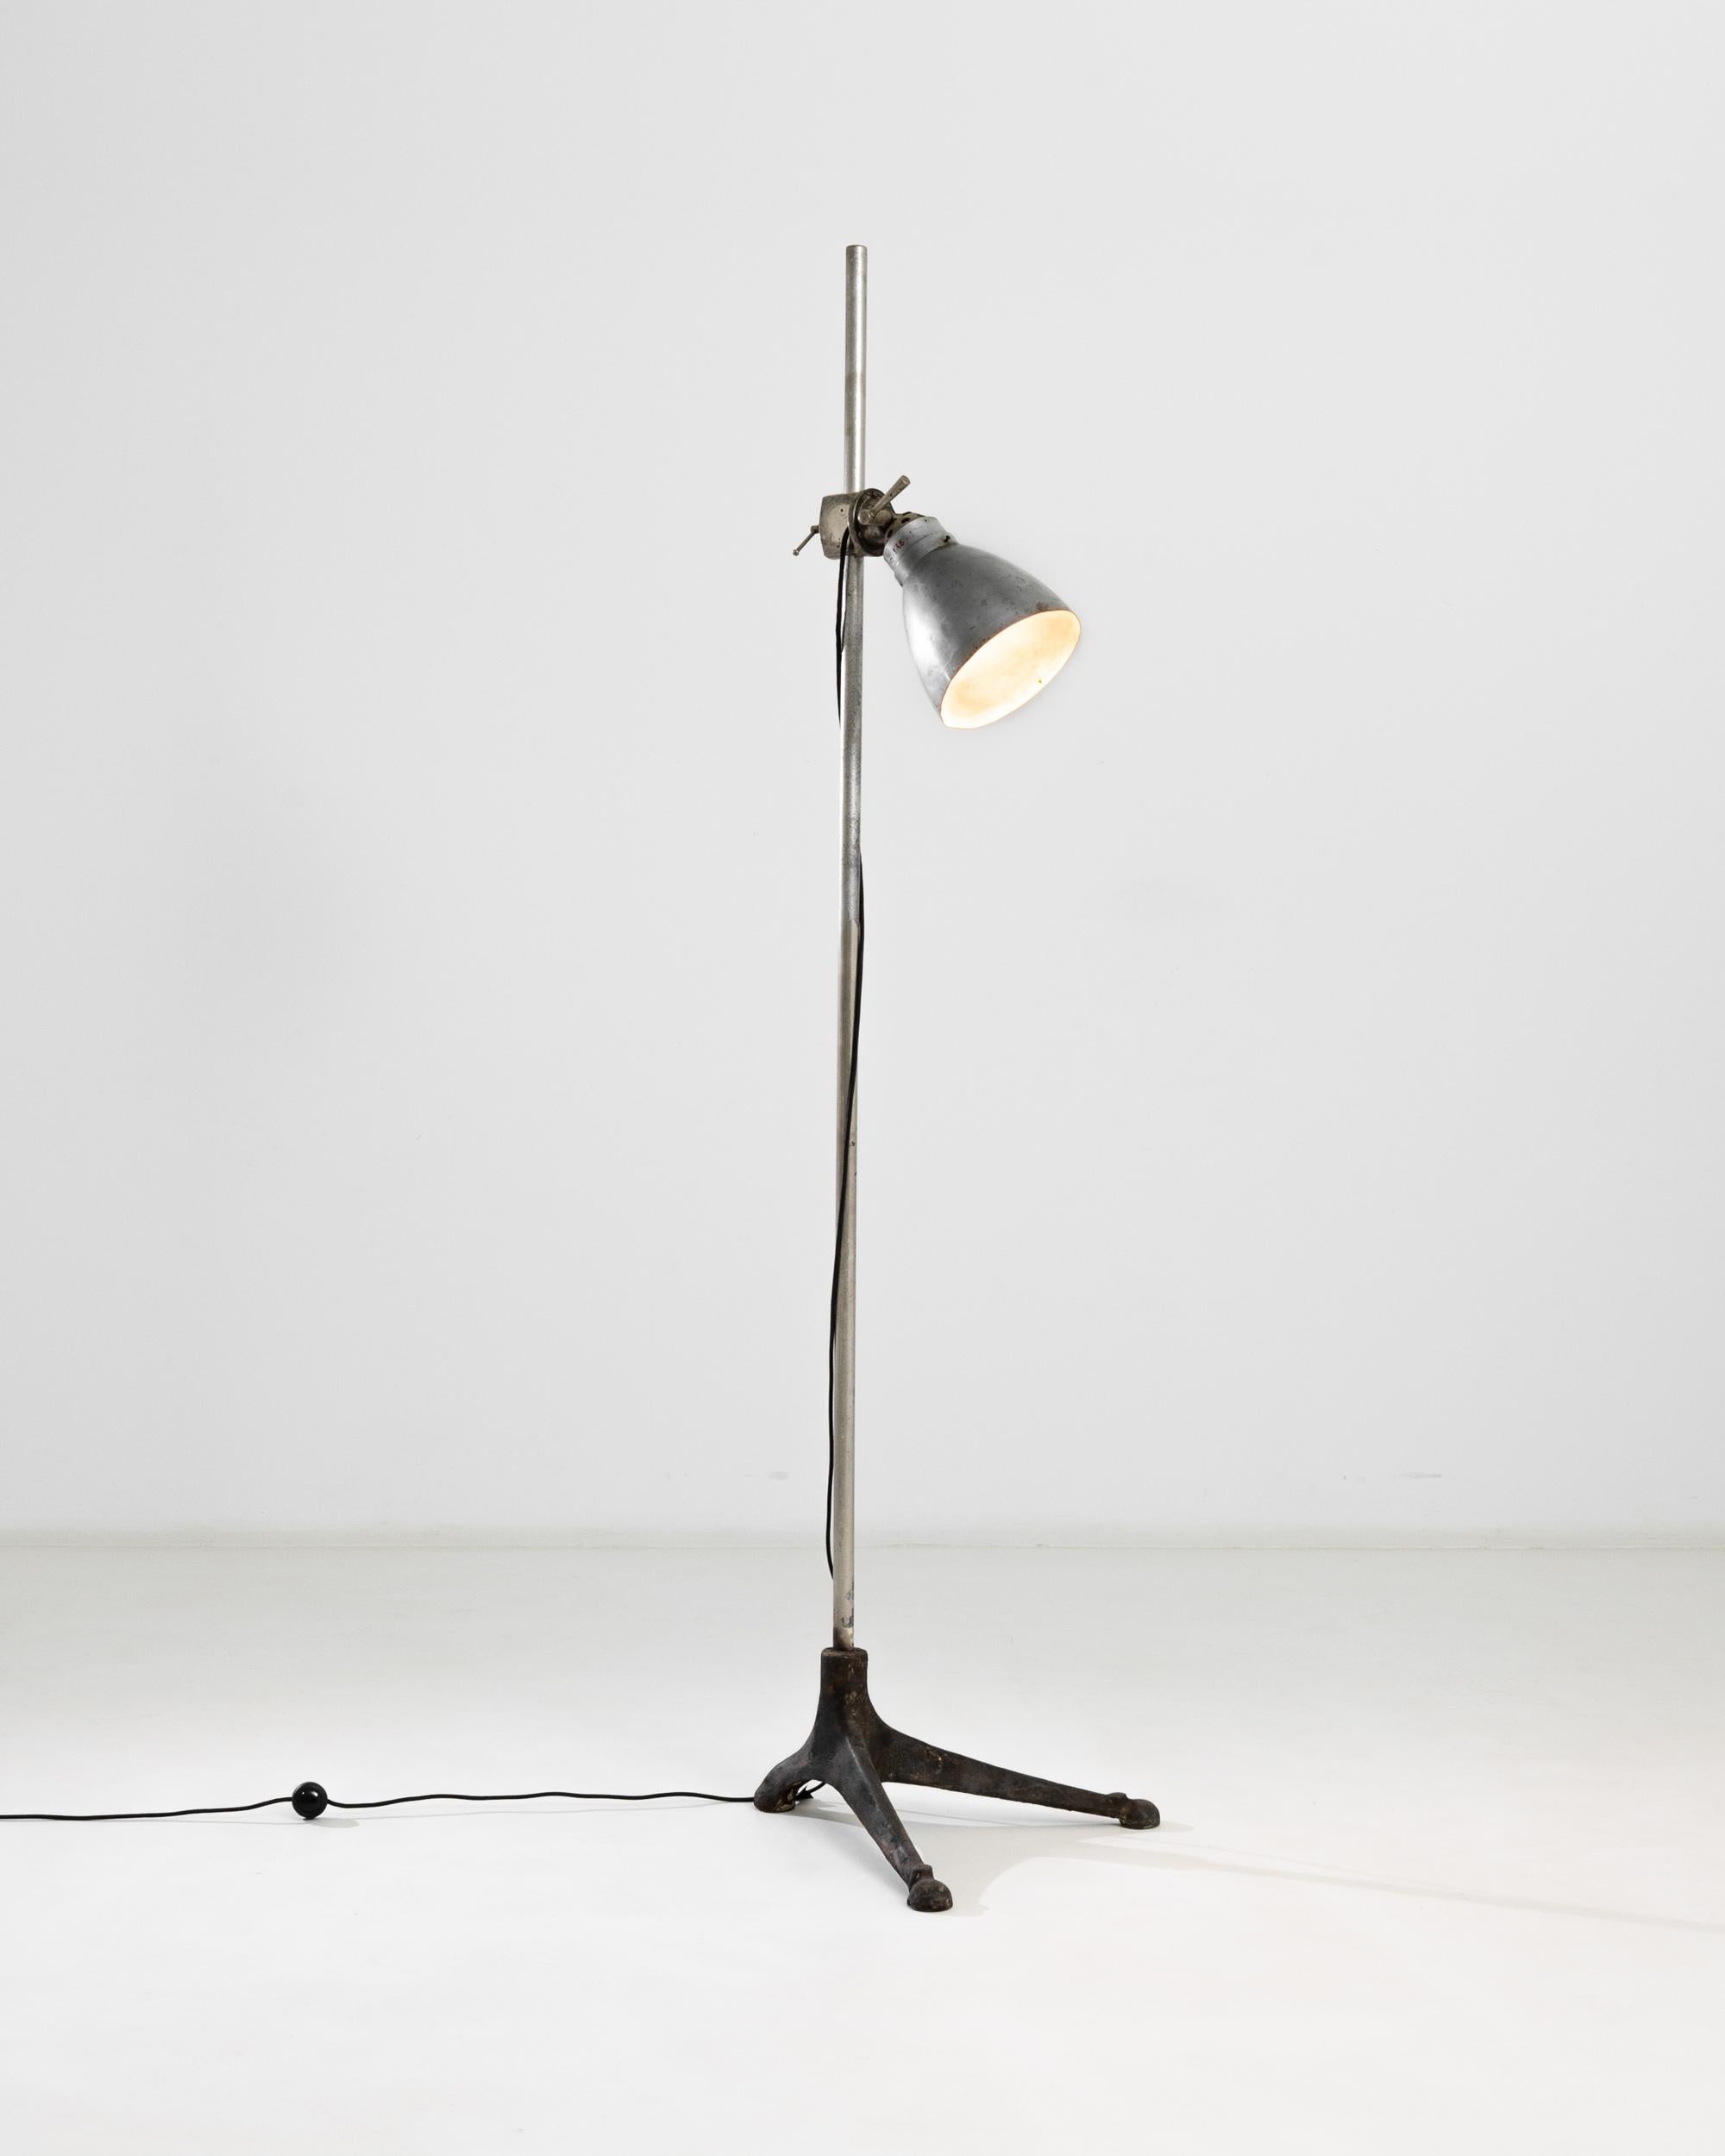 Ce lampadaire en métal du XXe siècle, produit en France, est doté d'un abat-jour réglable et de pieds tripodes irréguliers en fer forgé, ce qui lui confère un profil particulier. Le grand mât s'élève à plus de 80 pouces, ce qui donne à la lampe un